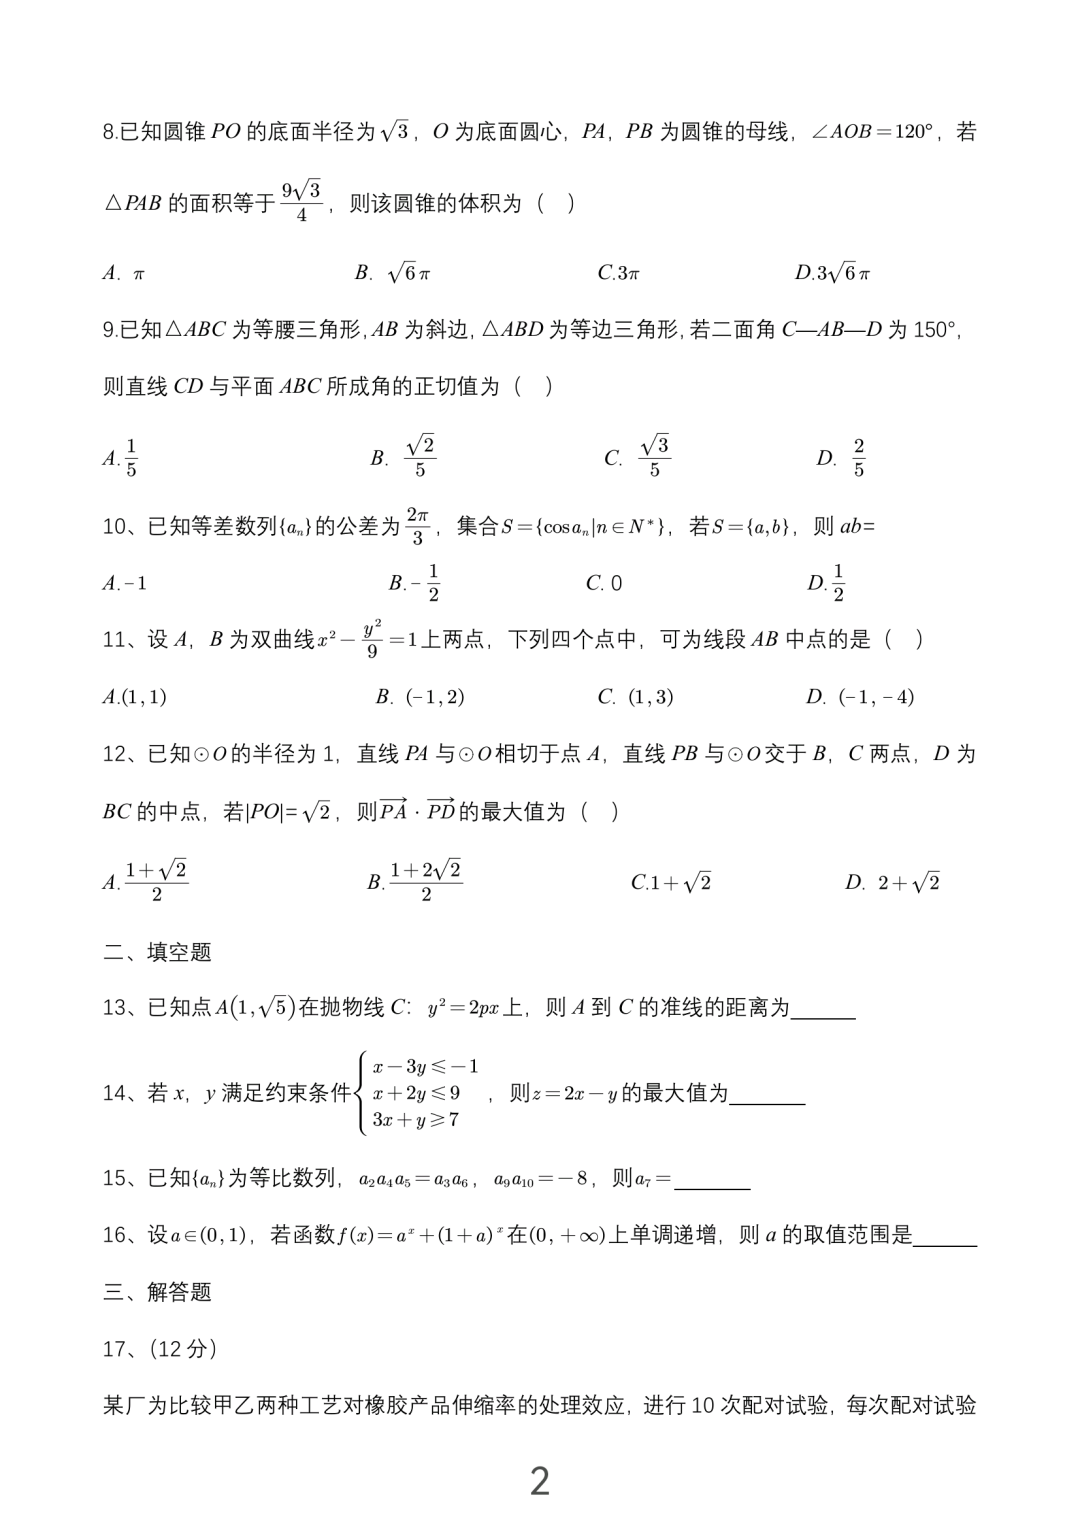 2023宁夏全国高考数学理科试卷